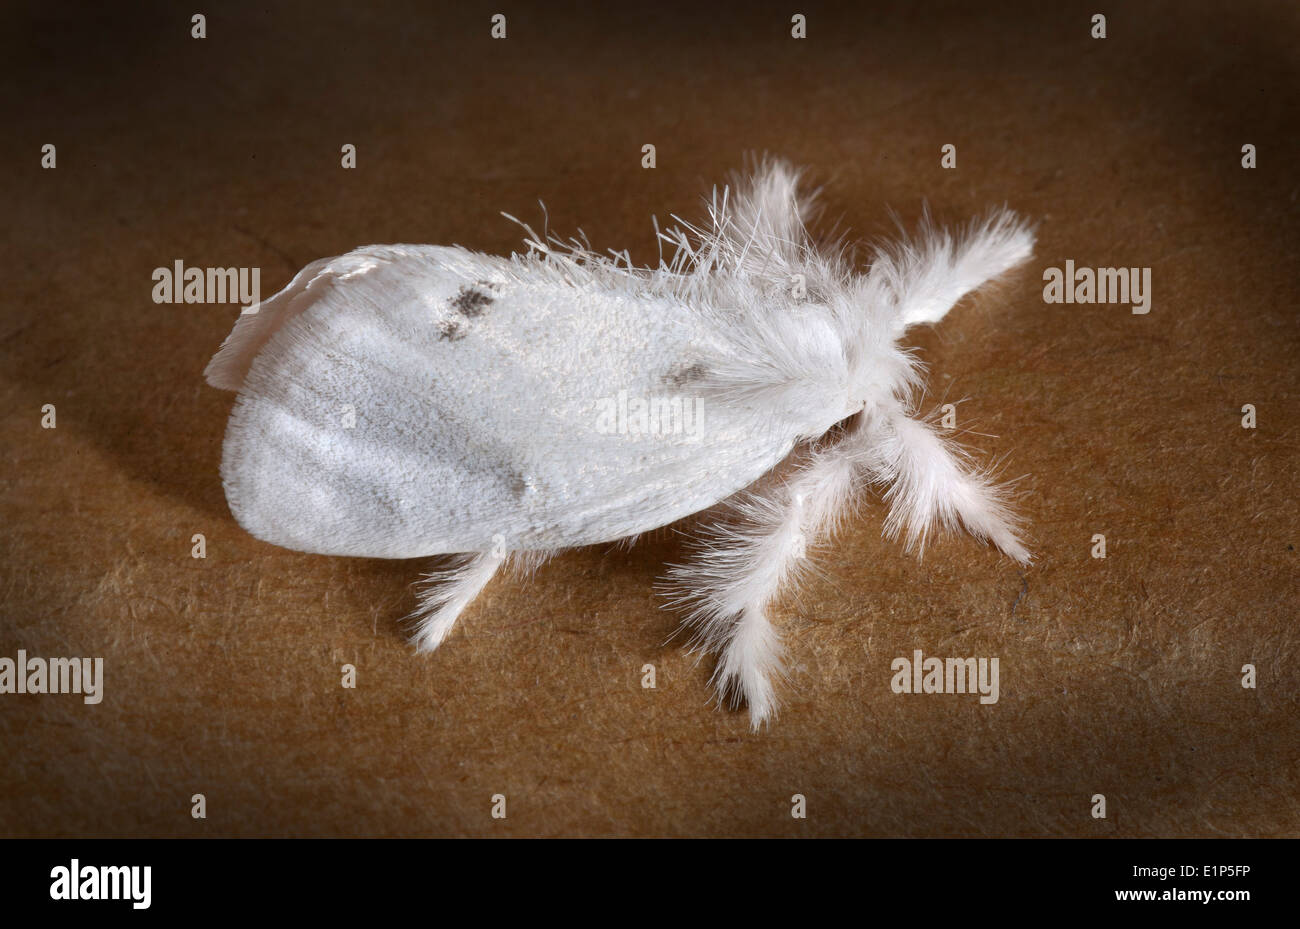 Gelb-Tail, Goldtail Motte oder Swan Moth (Euproctis Similis) ist ein Schmetterling der Familie Lymantriidae. Stockfoto